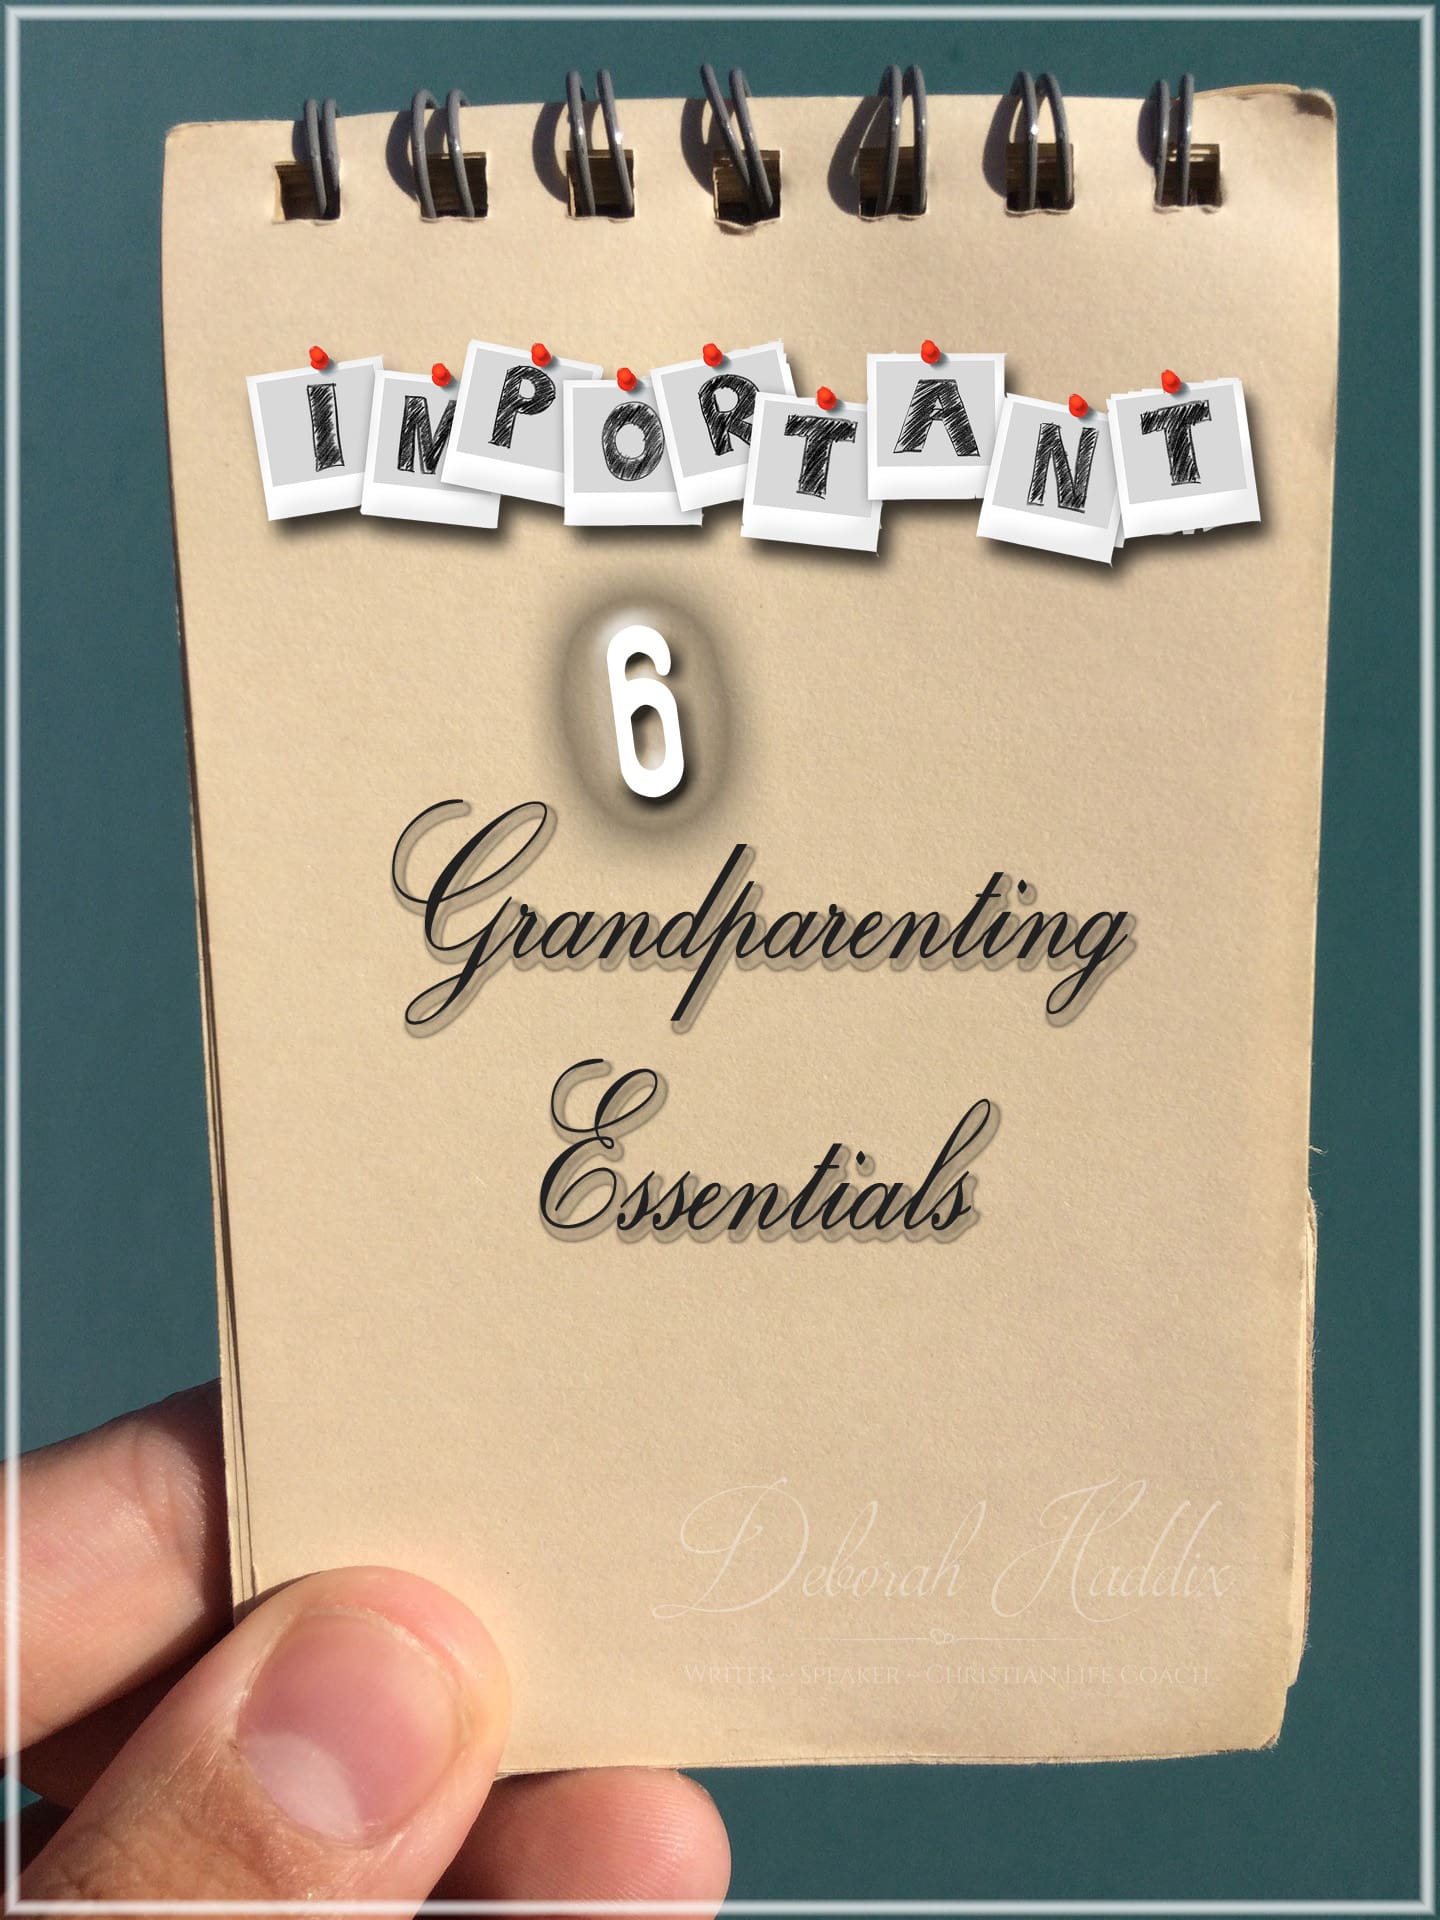 6 Grandparenting Essentials